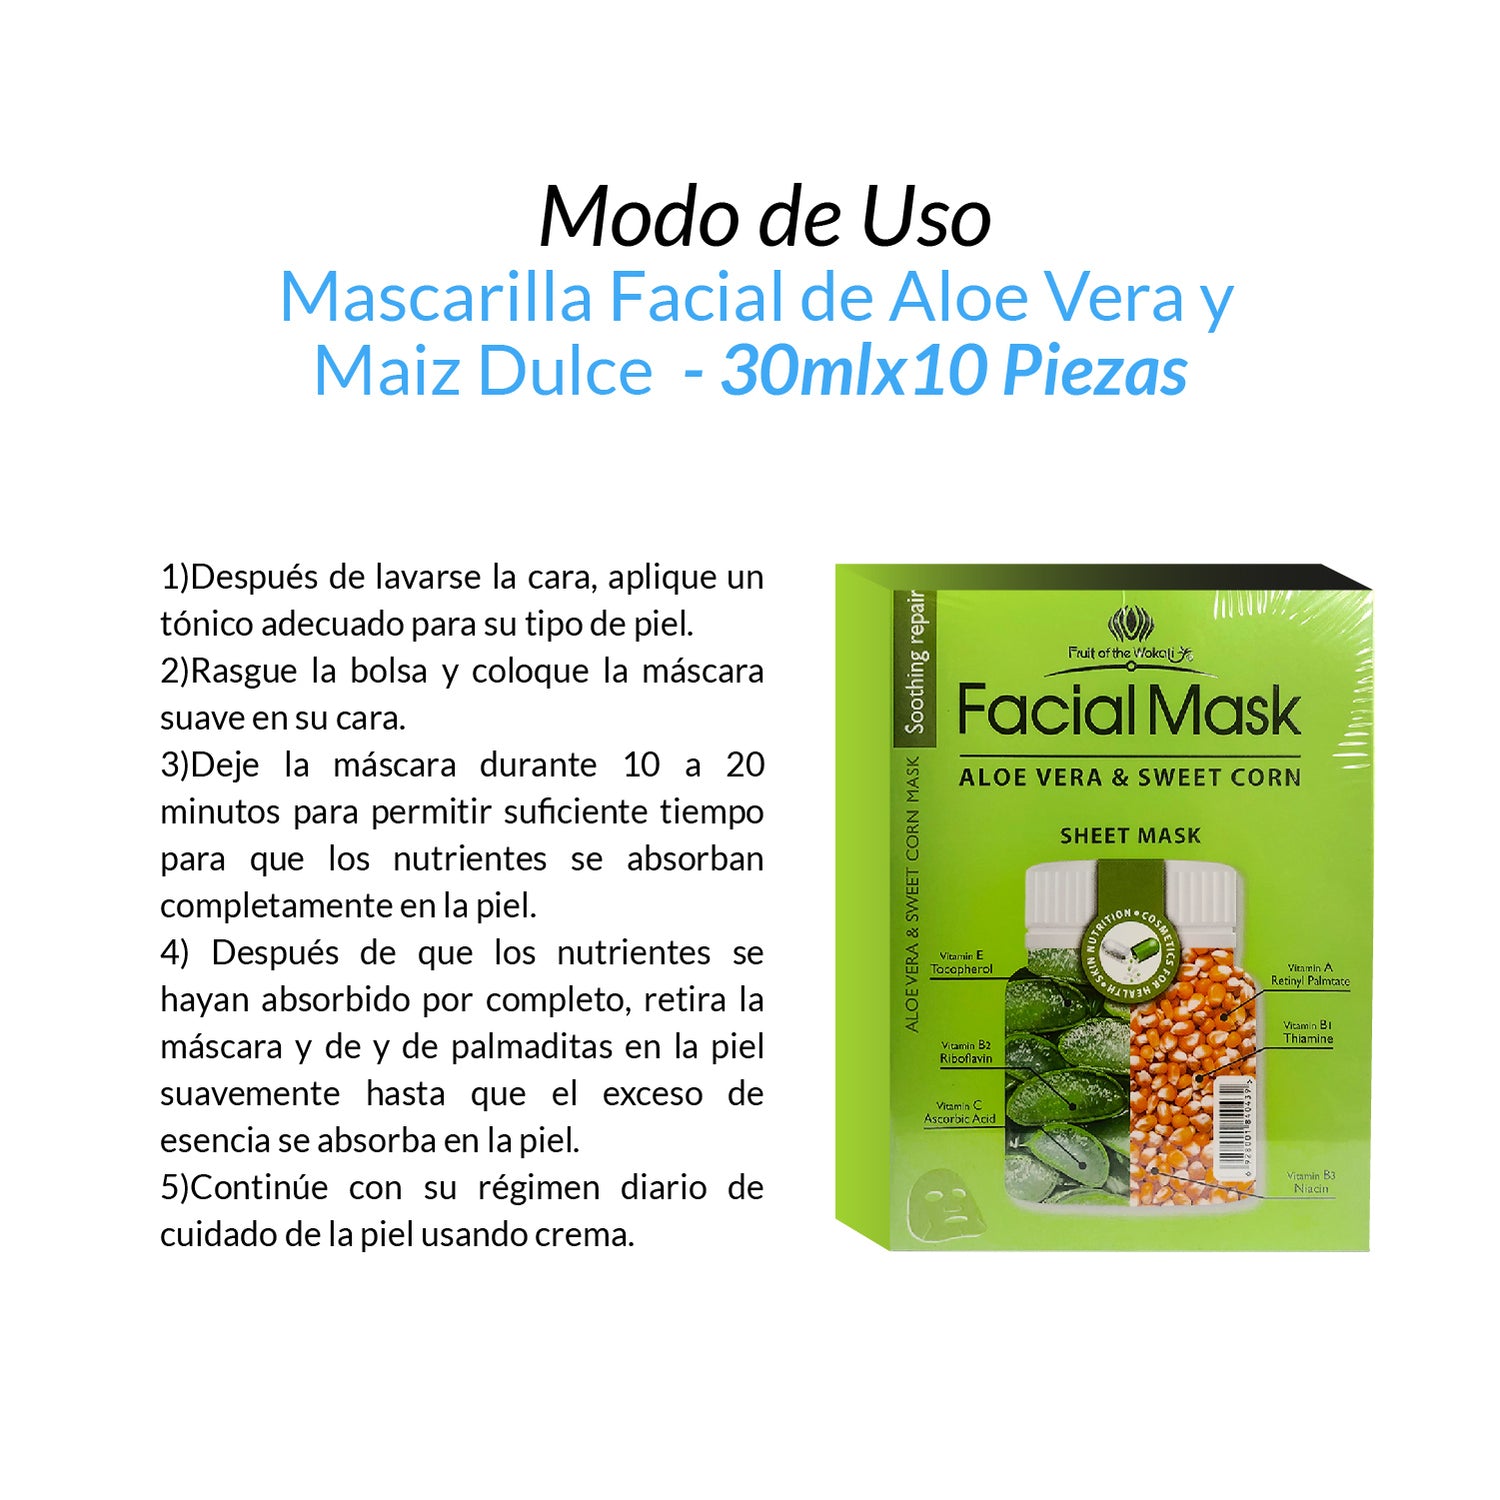 Mascarilla Facial de Aloe Vera y Maiz Dulce 30ml x10 piezas.